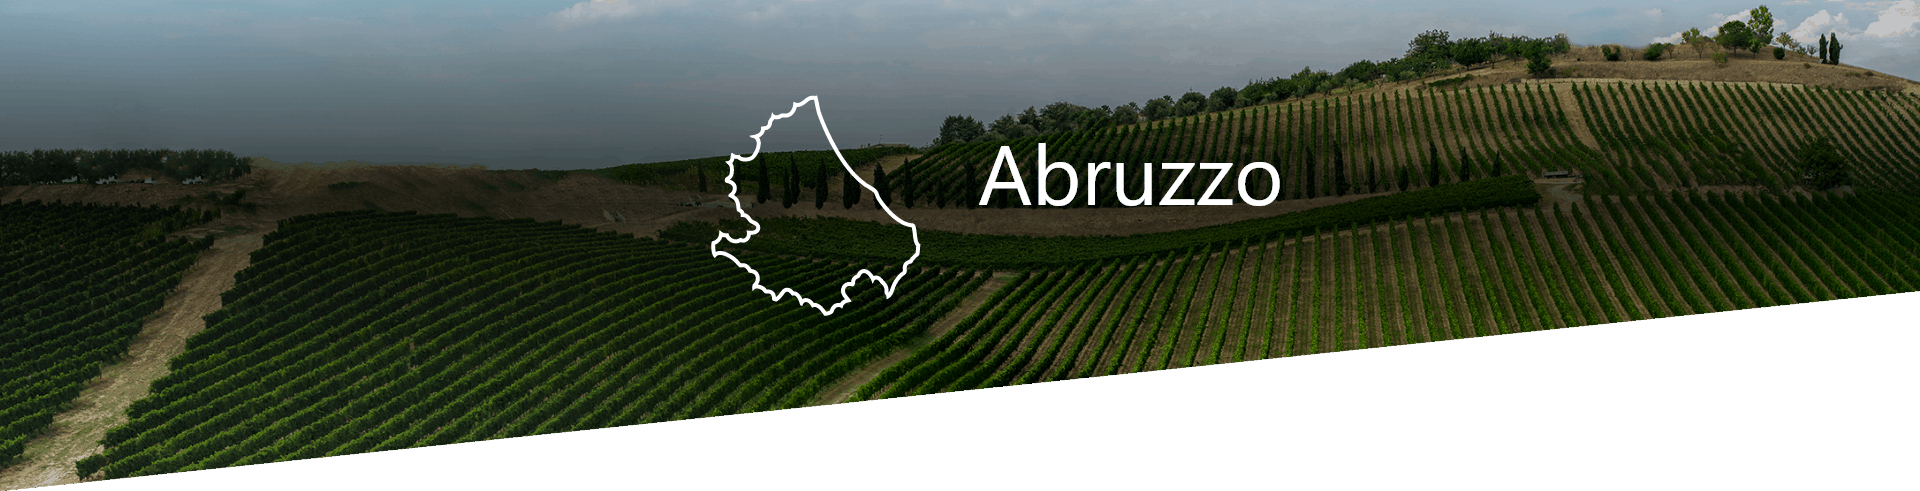 Selezione Vini e Cantine in Abruzzo